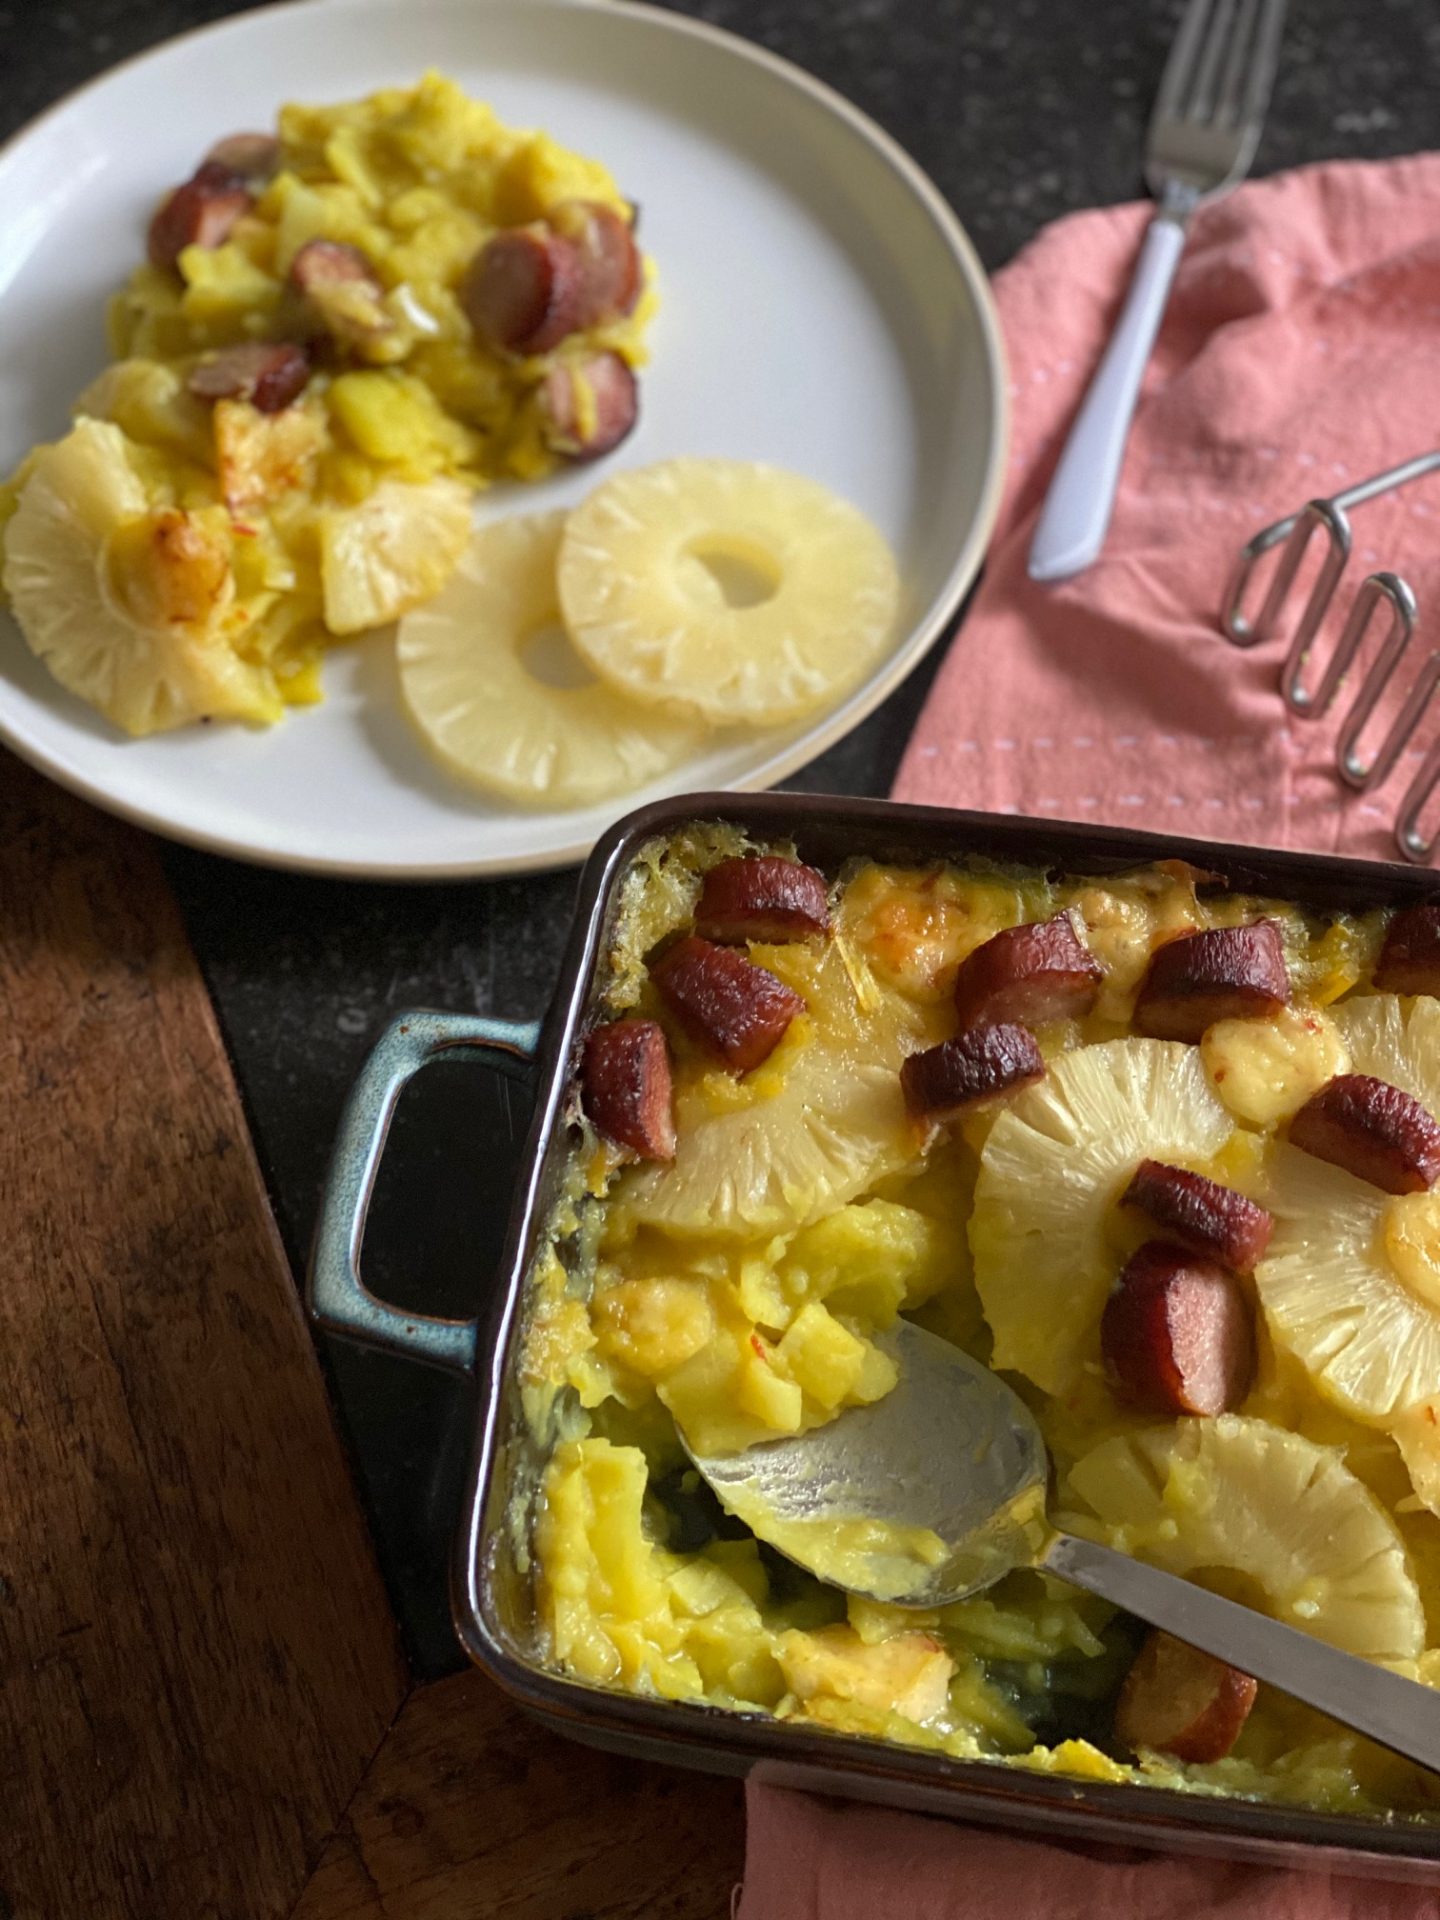 Preistamppot recept met ananas, chilikaas en rookworst - Foodblog Foodinista